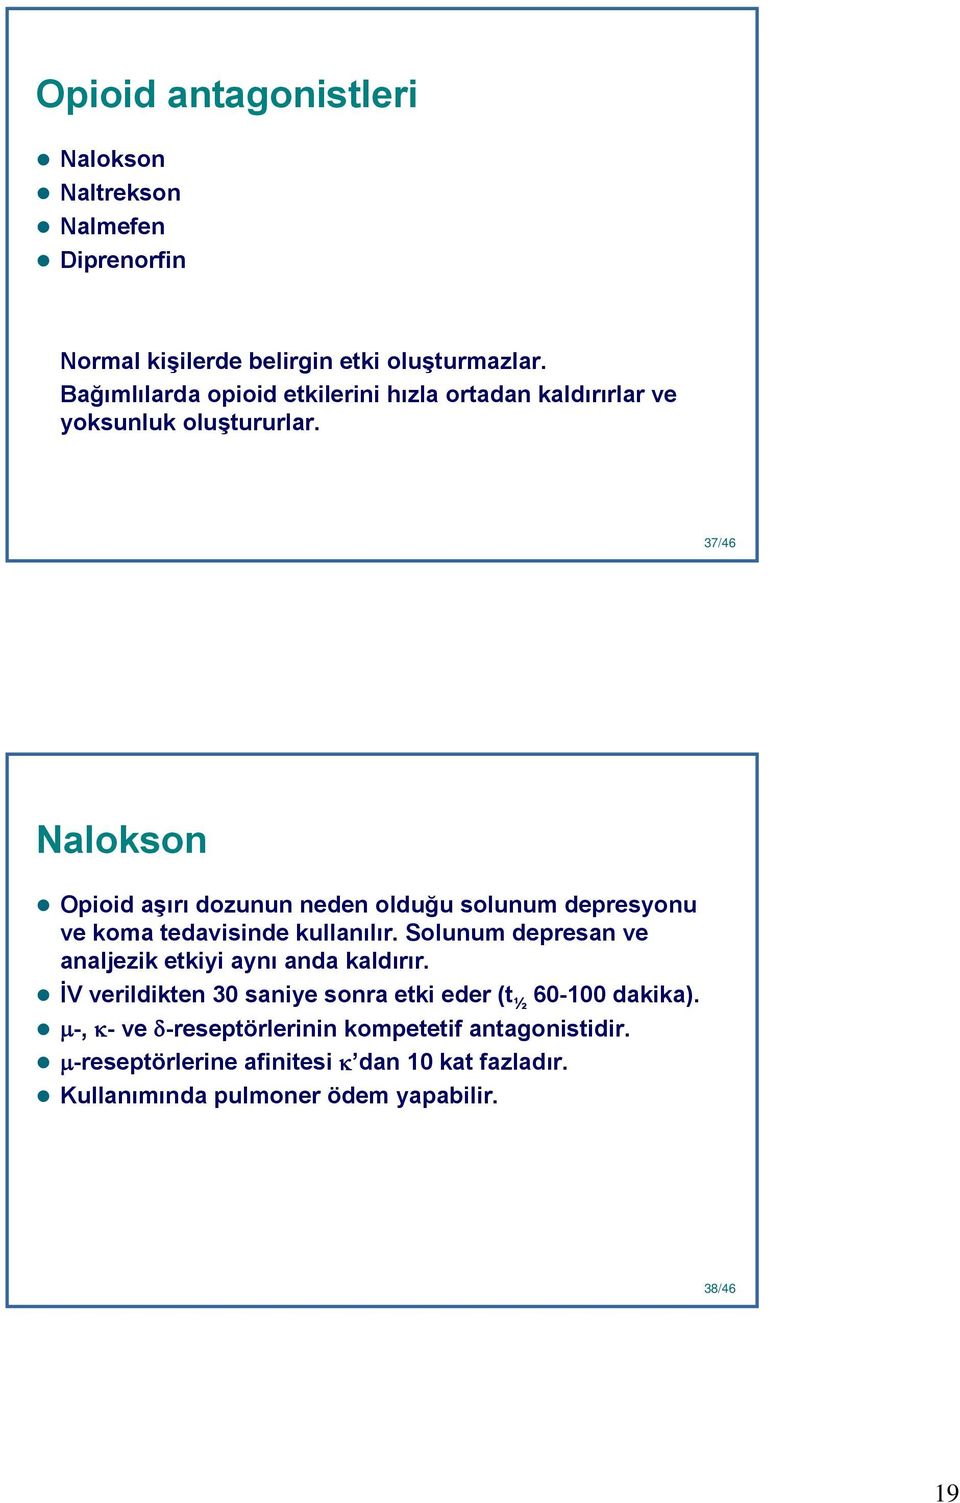 37 37/46 Nalokson Opioid aşırı dozunun neden olduğu solunum depresyonu ve koma tedavisinde kullanılır.